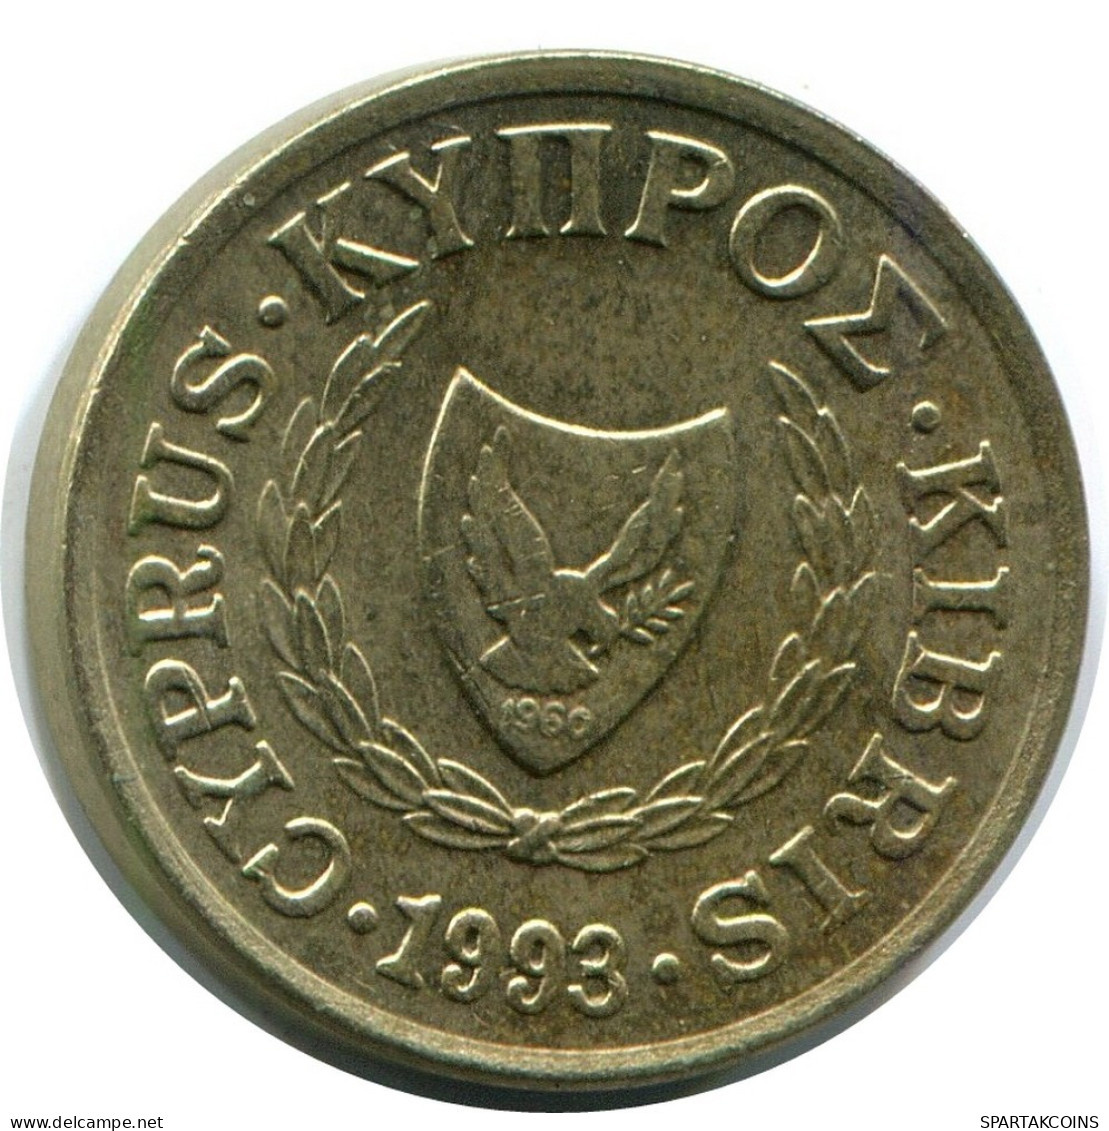 1 CENT 1993 CYPRUS Coin #AR933.U.A - Zypern